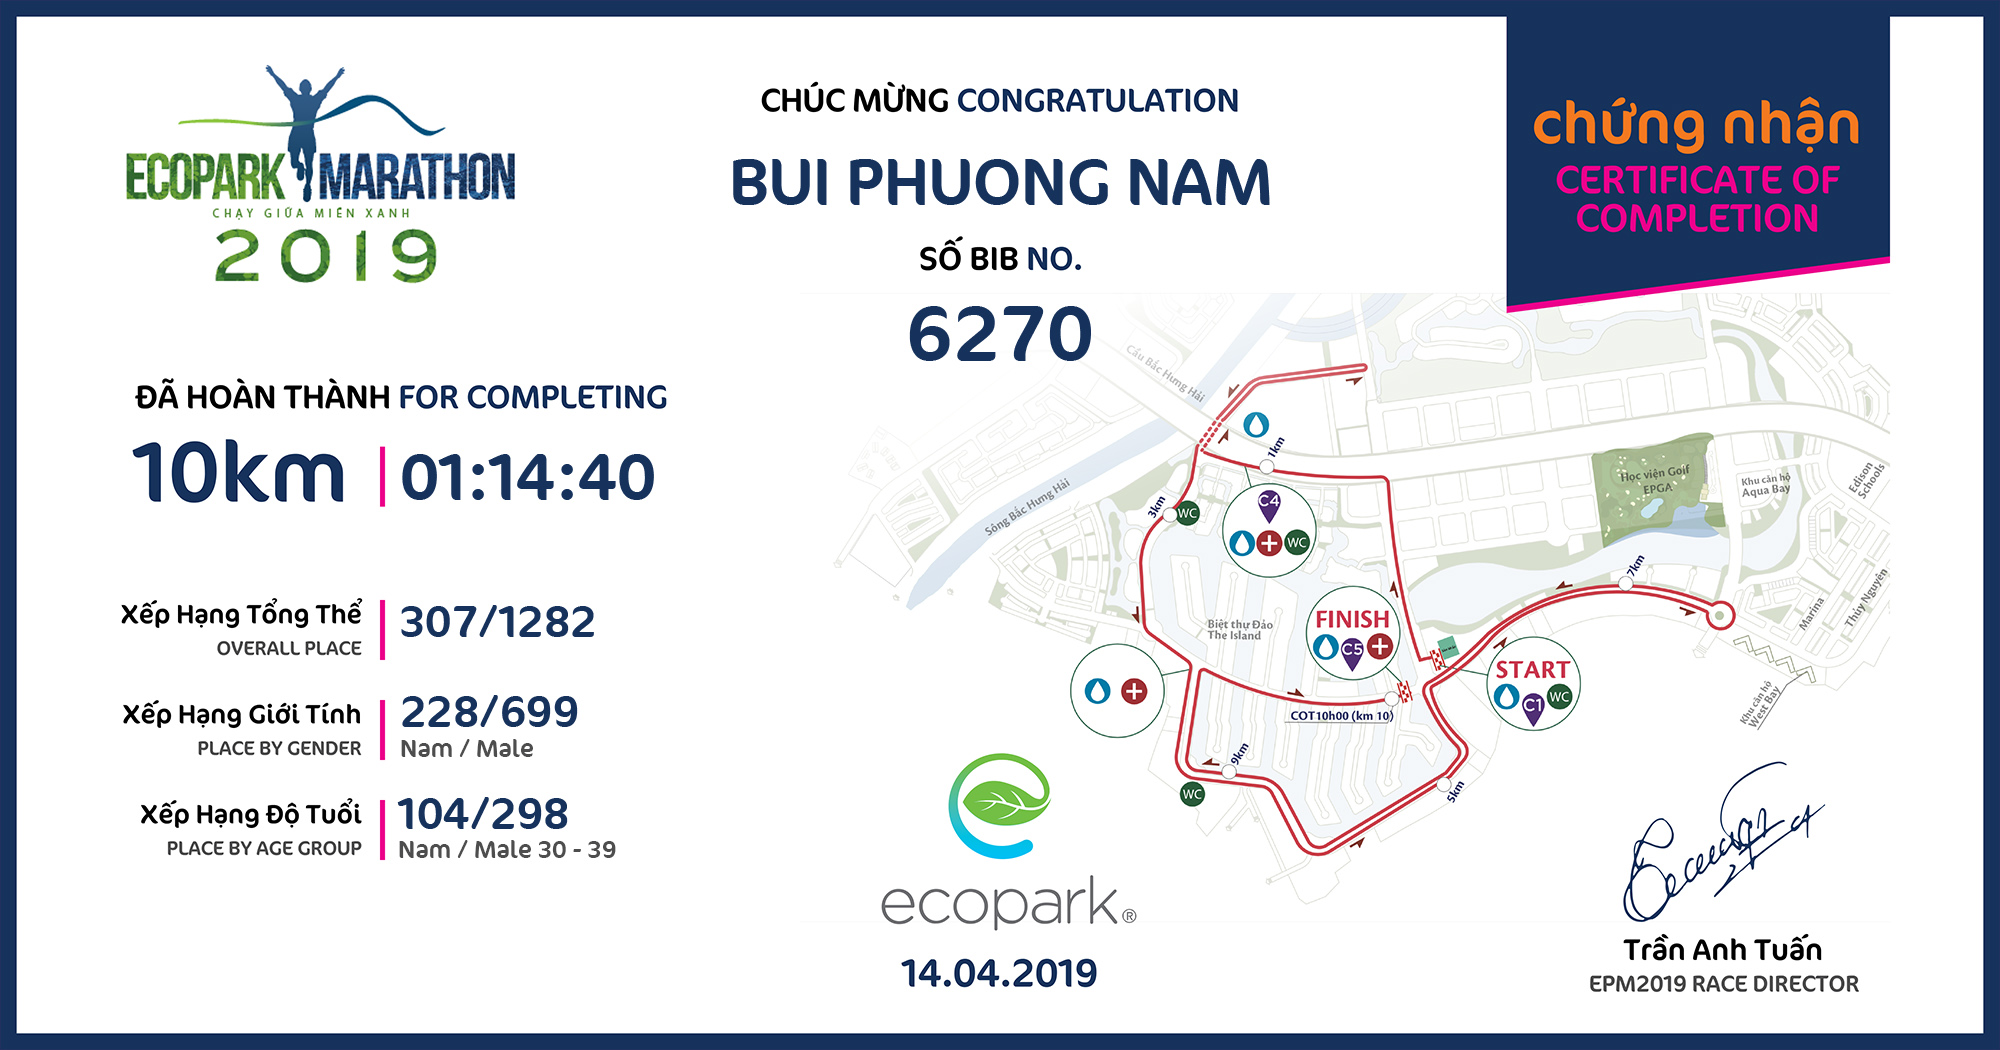 6270 - Bui Phuong Nam